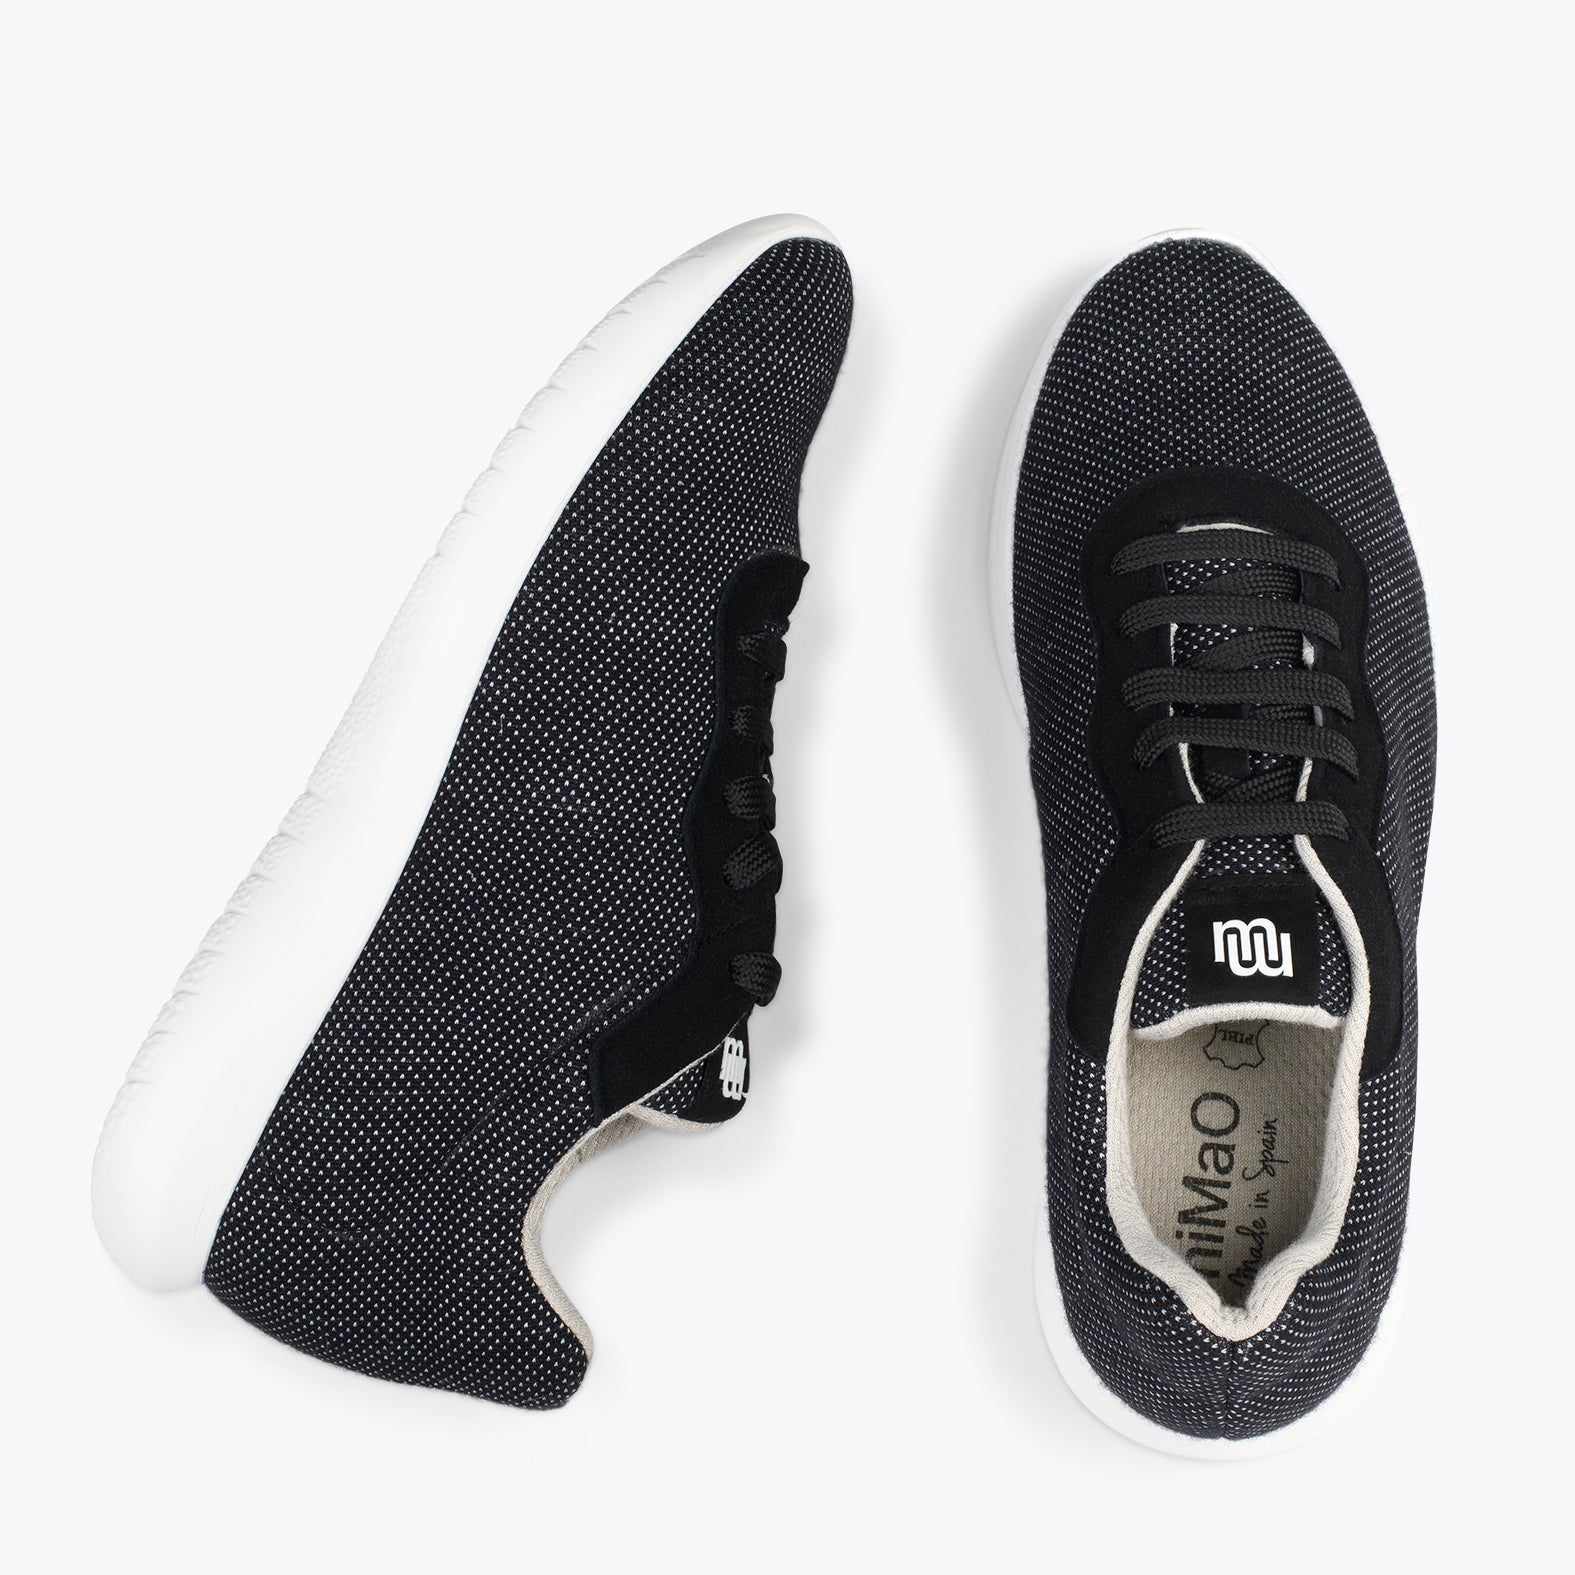 YOGA – BLACK sneakers crafted in merino wool